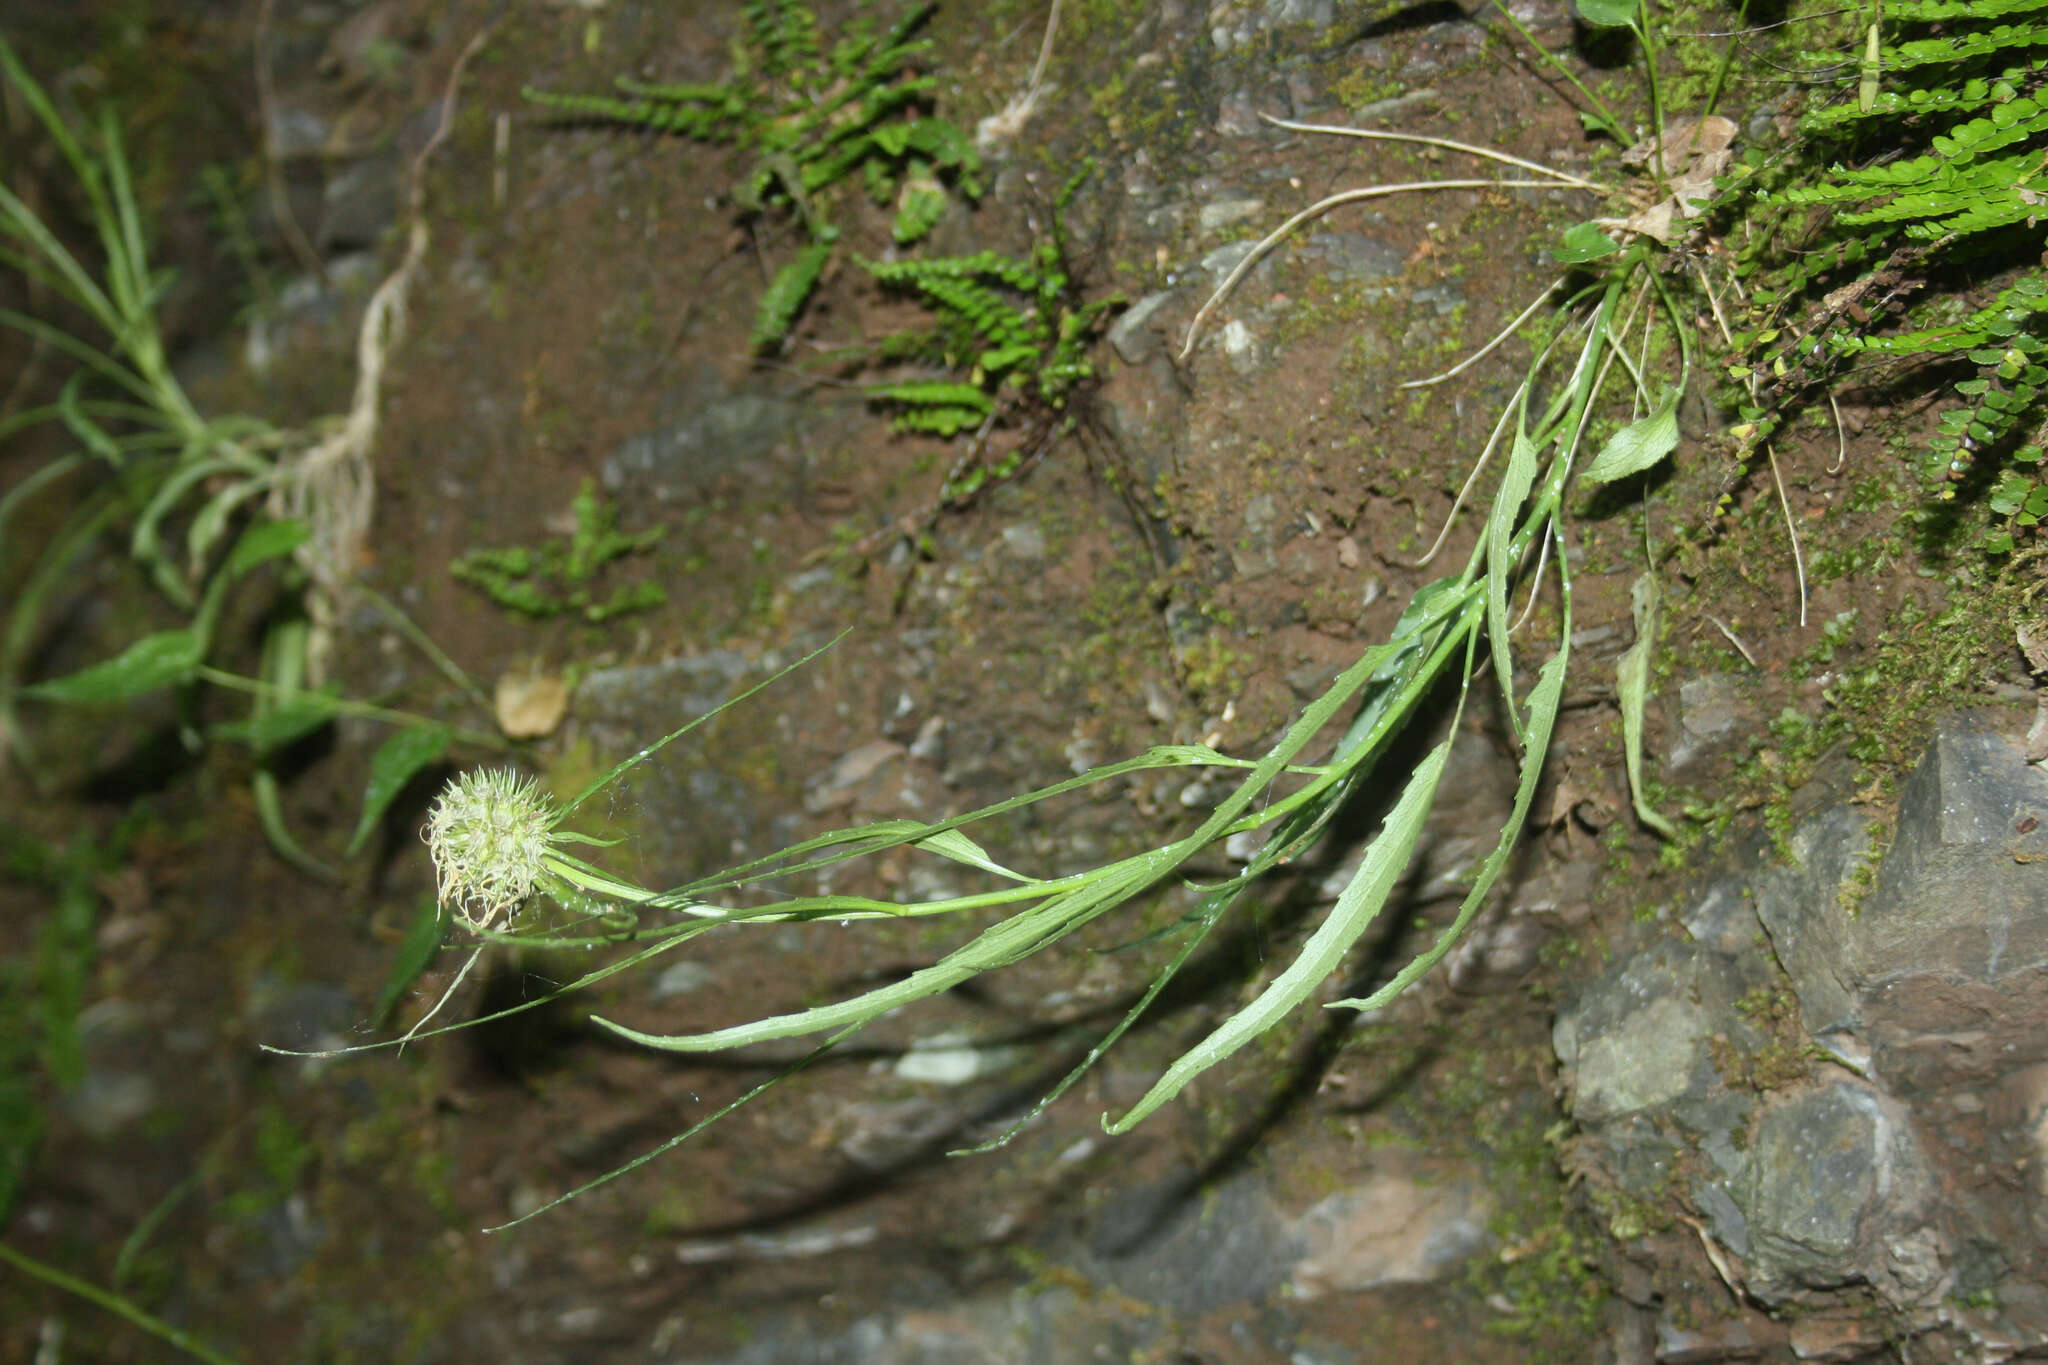 Image of Phyteuma scheuchzeri subsp. columnae (E. Thomas) Bech.